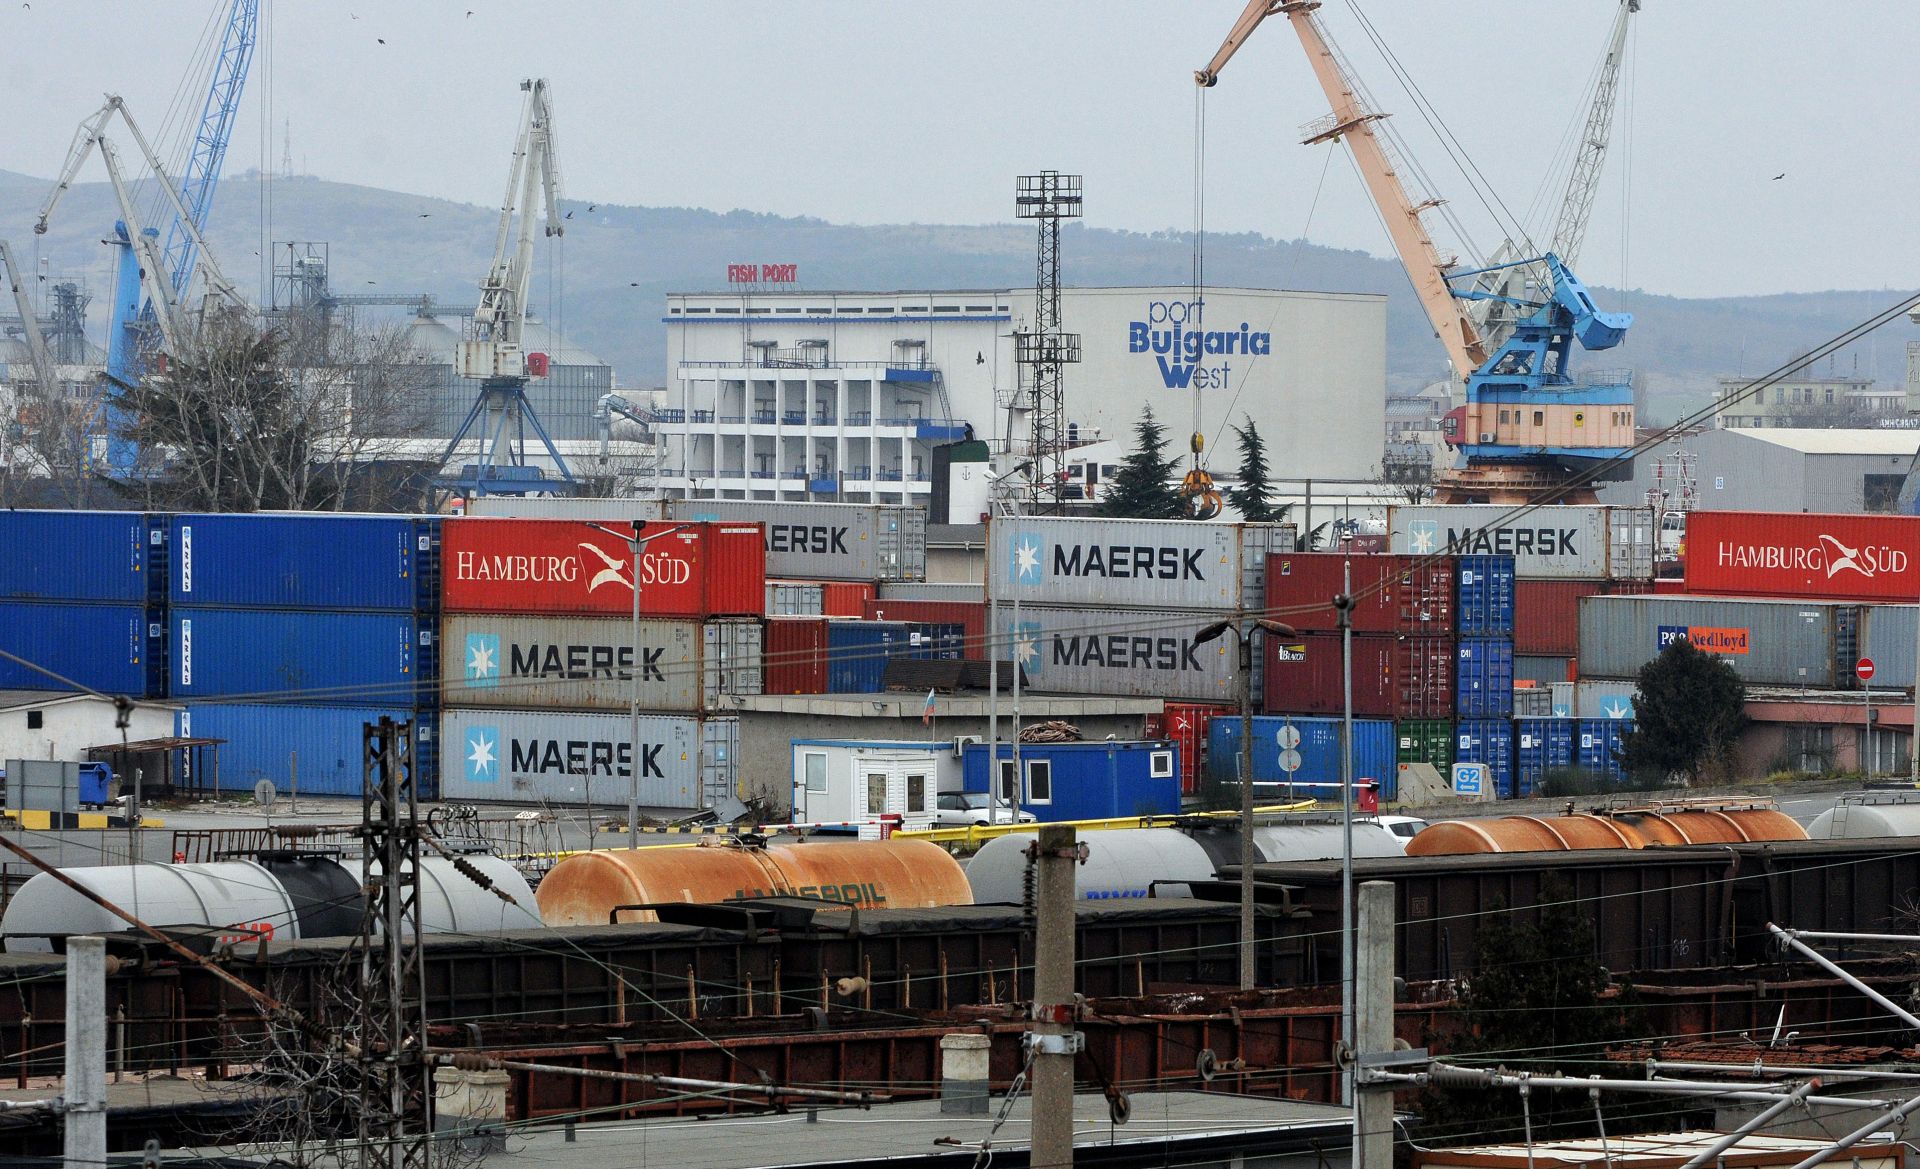 Районната прокуратура в Бургас започна разследване за нерегламентиран внос на 20 контейнера с италиански отпадъци